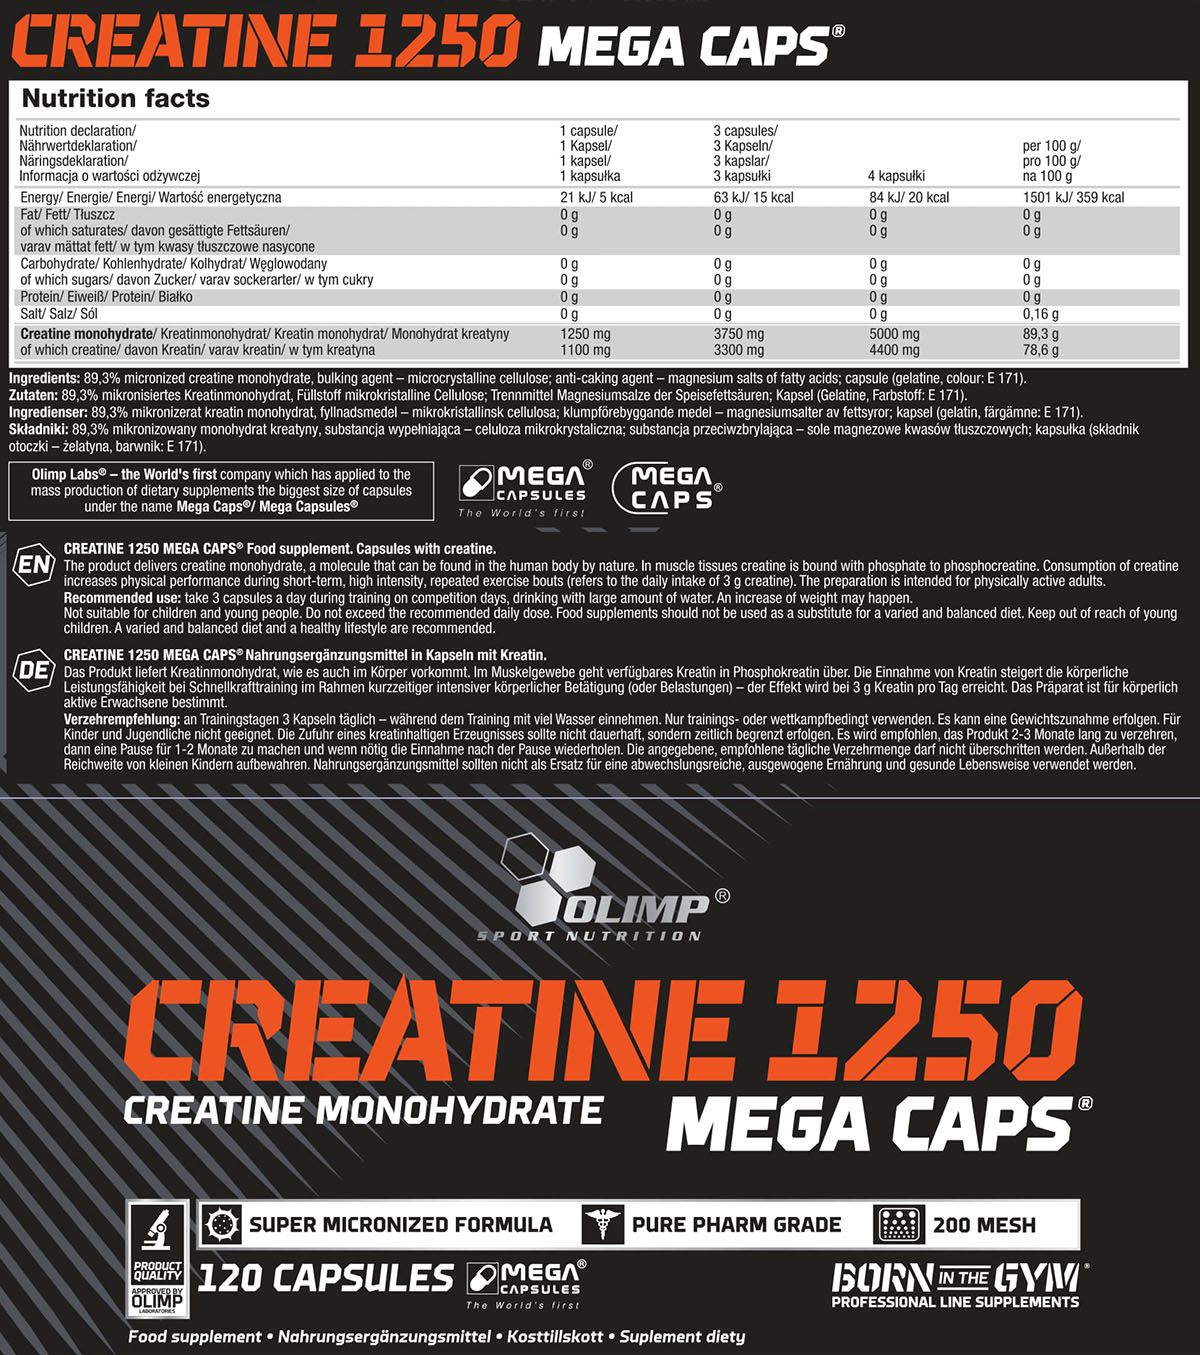 Olimp Creatine Monohydrate Mega Caps® (120 Caps à 1250mg)